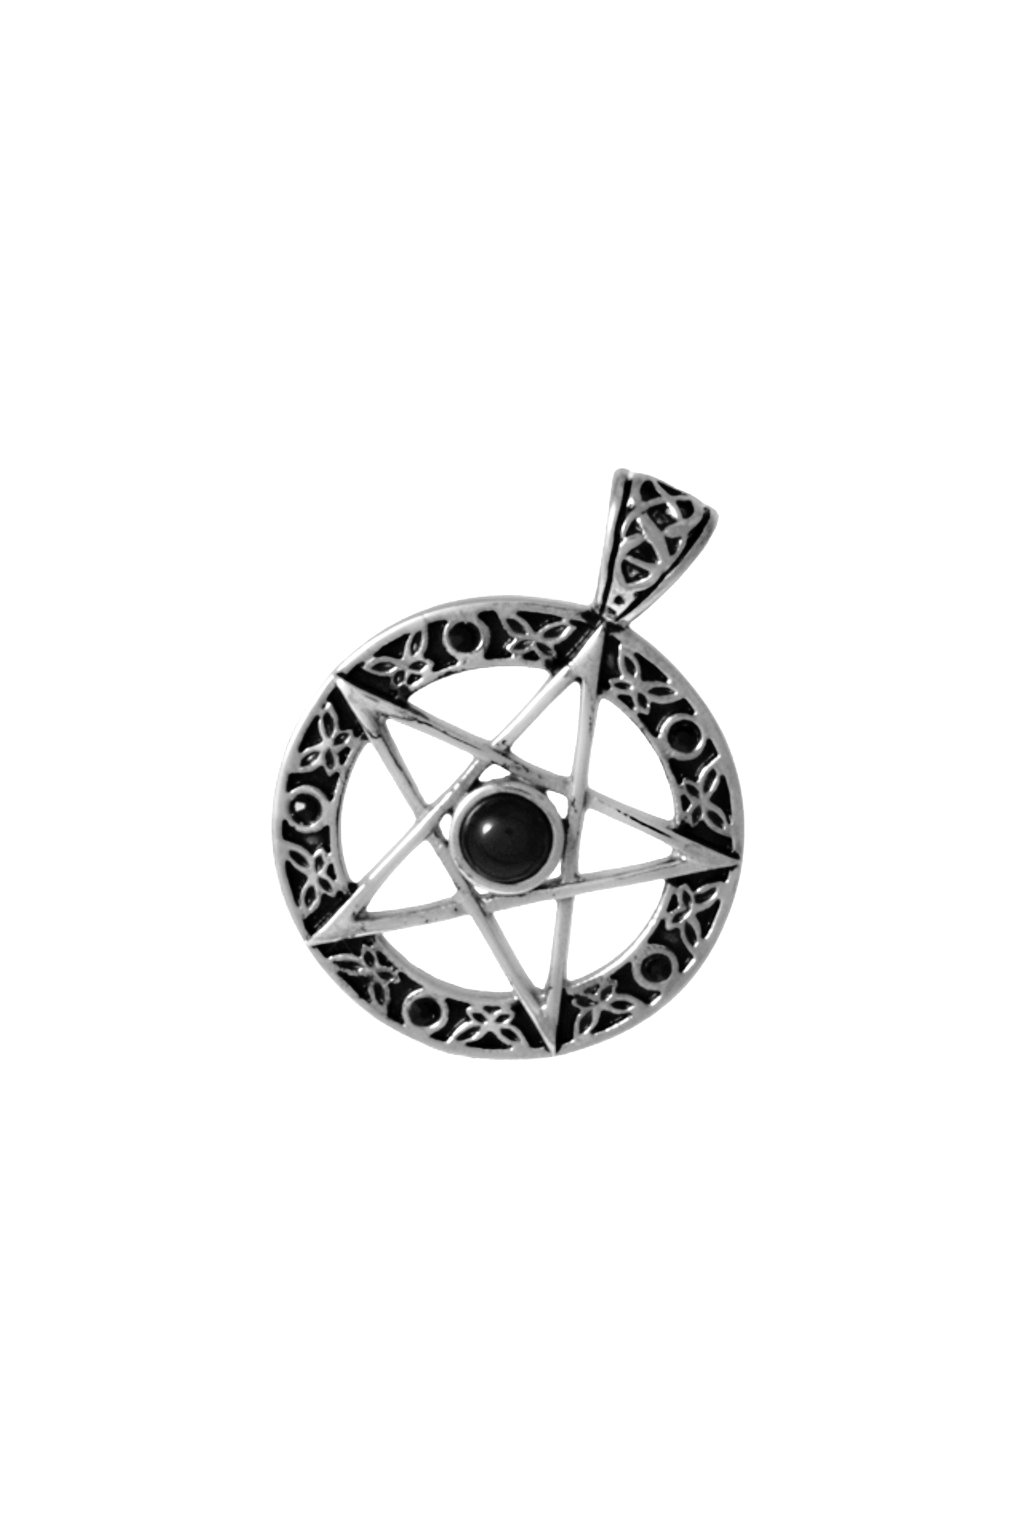 1458 skalimar privesek z chirurgicke oceli pentagram black 31394309